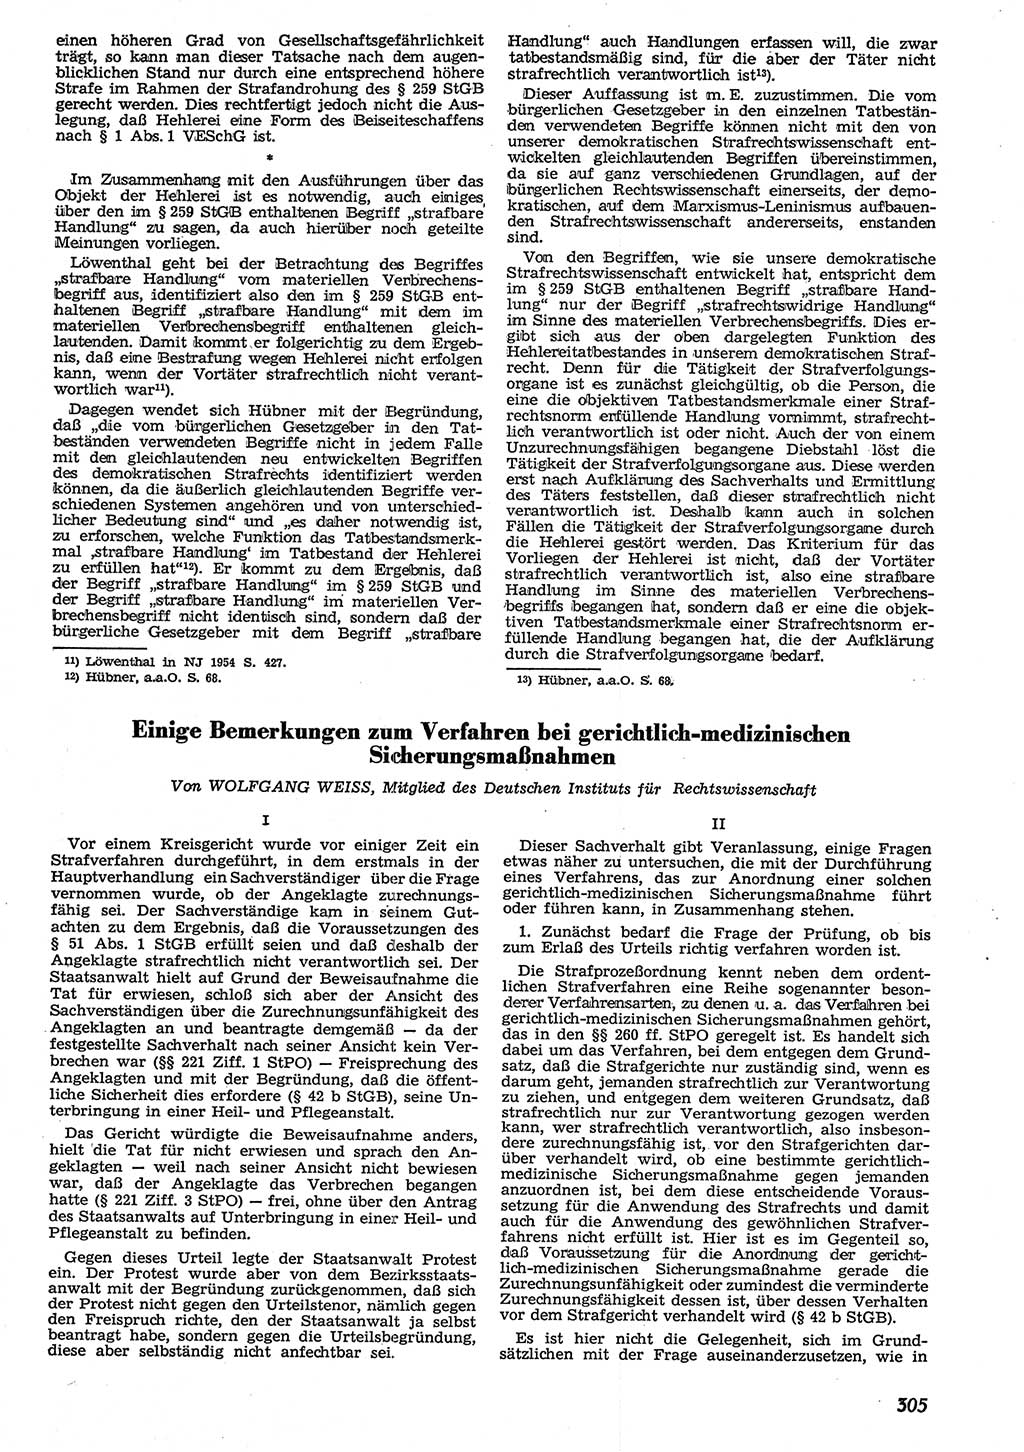 Neue Justiz (NJ), Zeitschrift für Recht und Rechtswissenschaft [Deutsche Demokratische Republik (DDR)], 10. Jahrgang 1956, Seite 305 (NJ DDR 1956, S. 305)